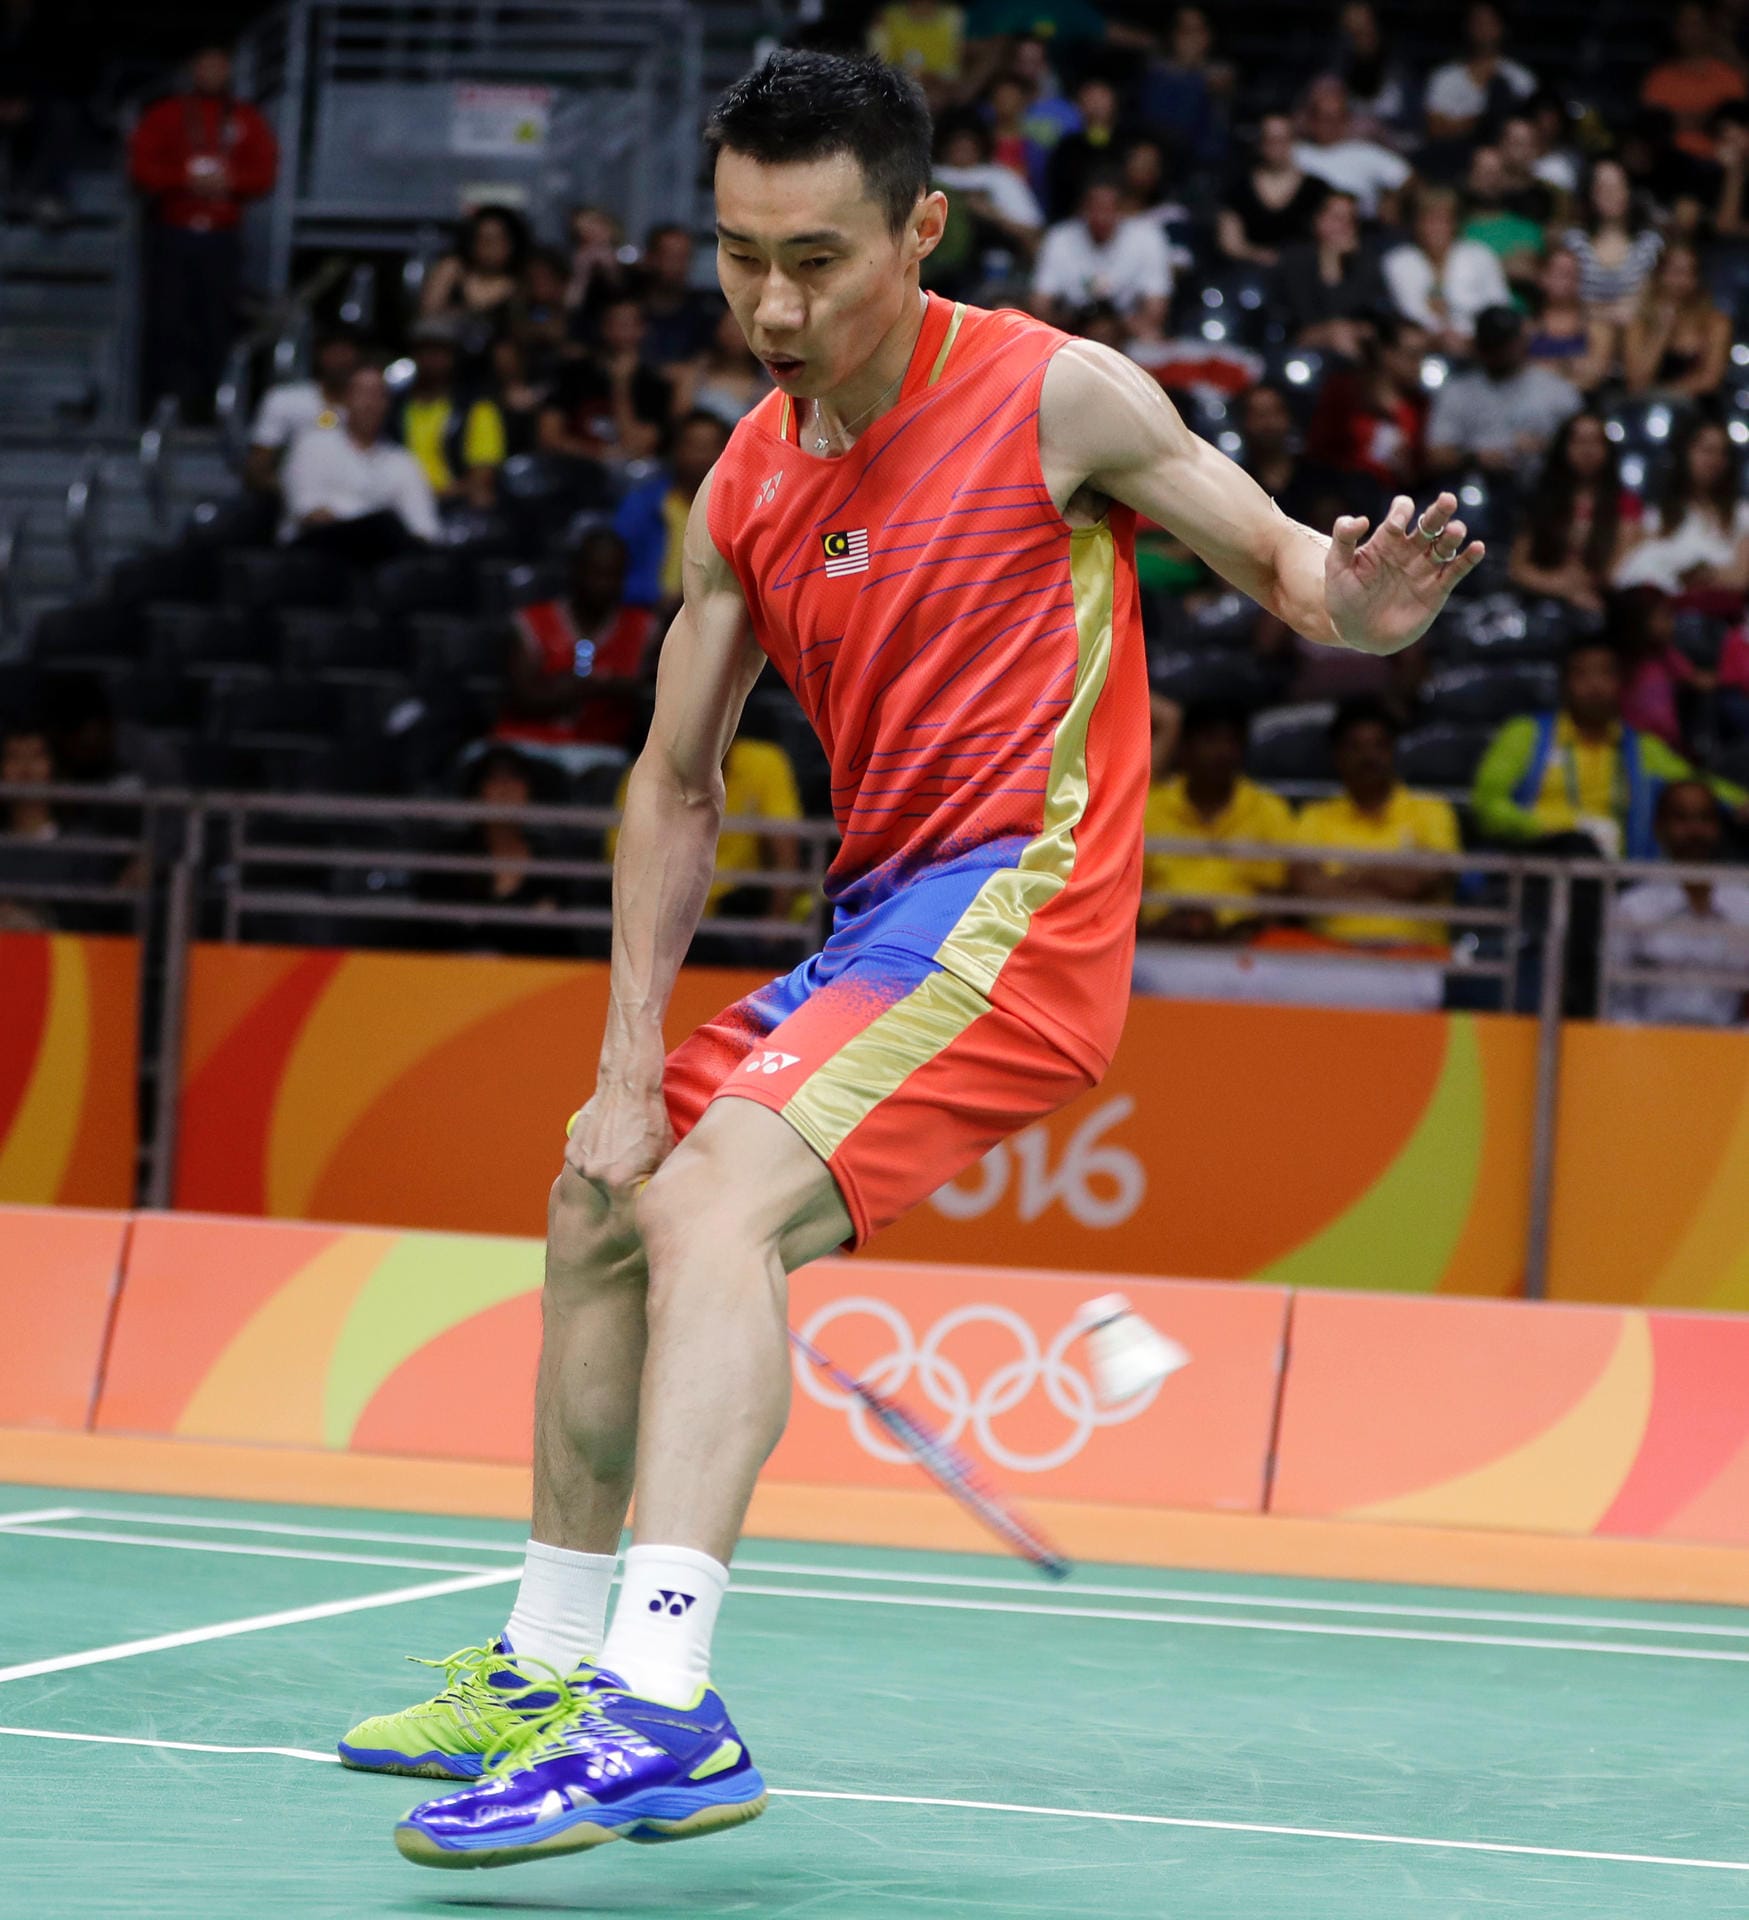 Für ein Kunststück beim Badminton sorgt Malaysias Top-Spieler Chong Wei Lee im Spiel gegen Soren Opti aus Suriname: Der Malaye returniert einen Ball von Opti per Vorhand durch die Beine.